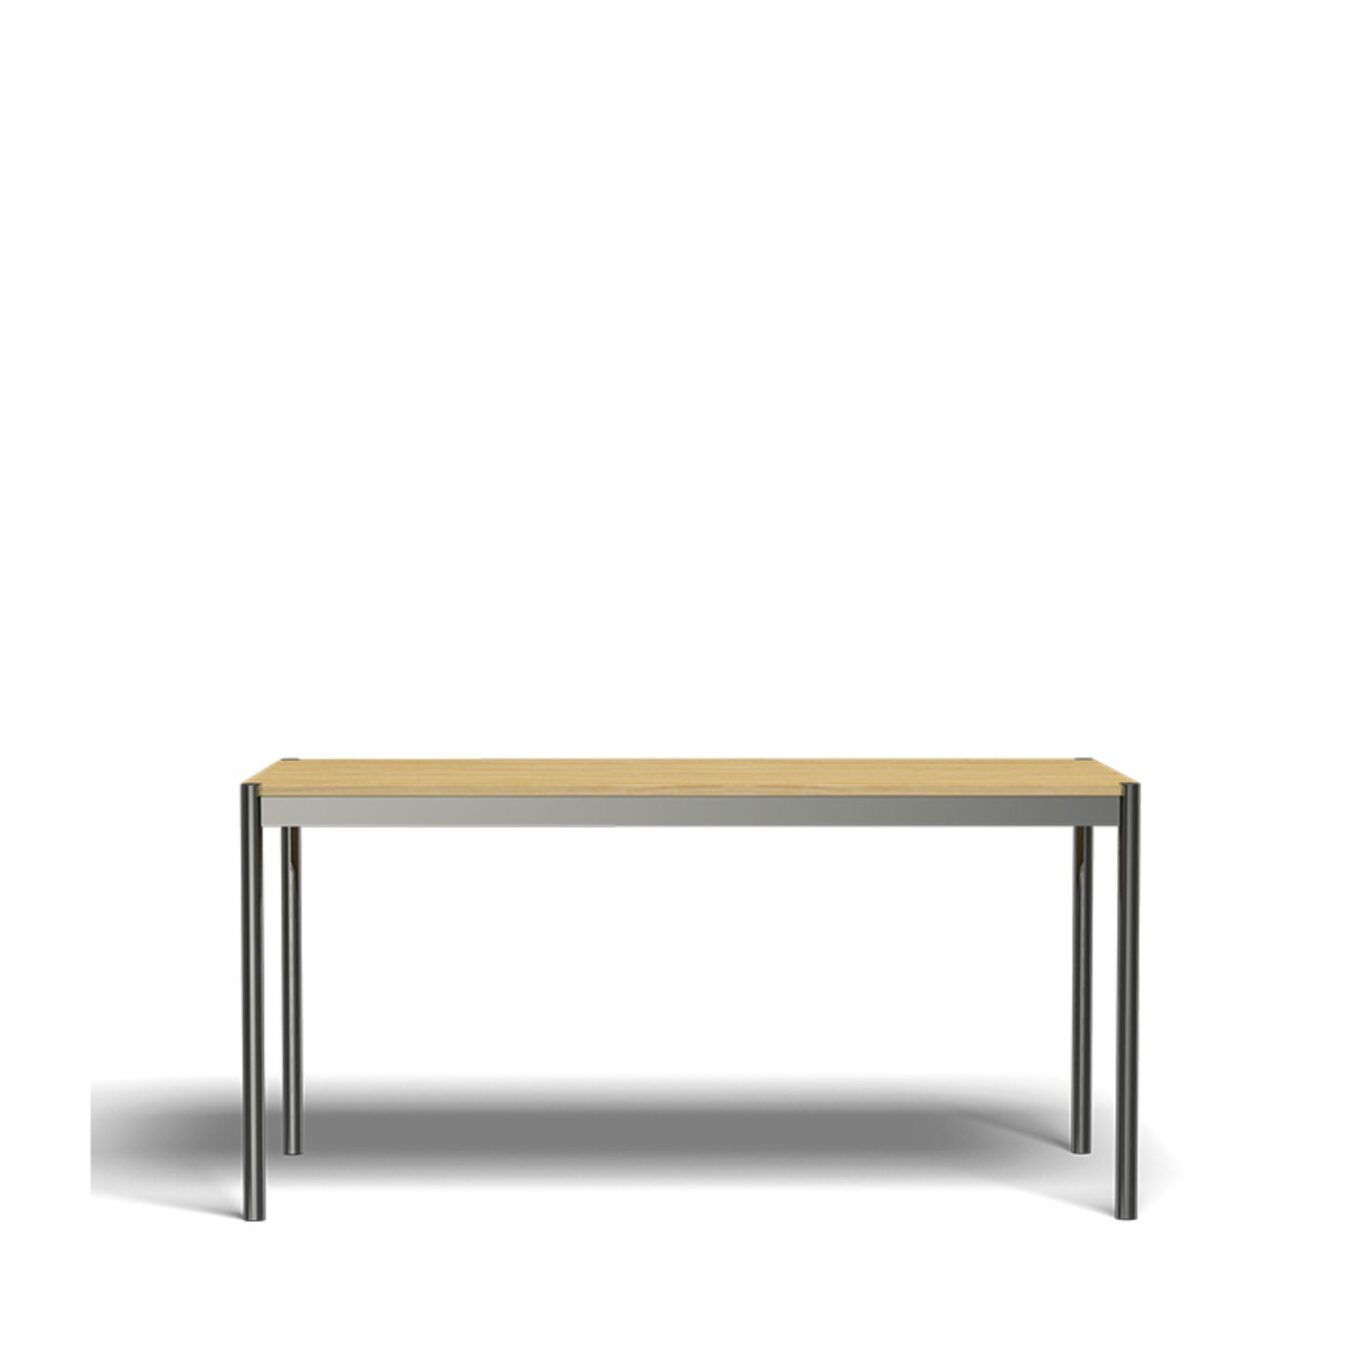 Table L1500 USM Haller – Chêne naturel - Image #1